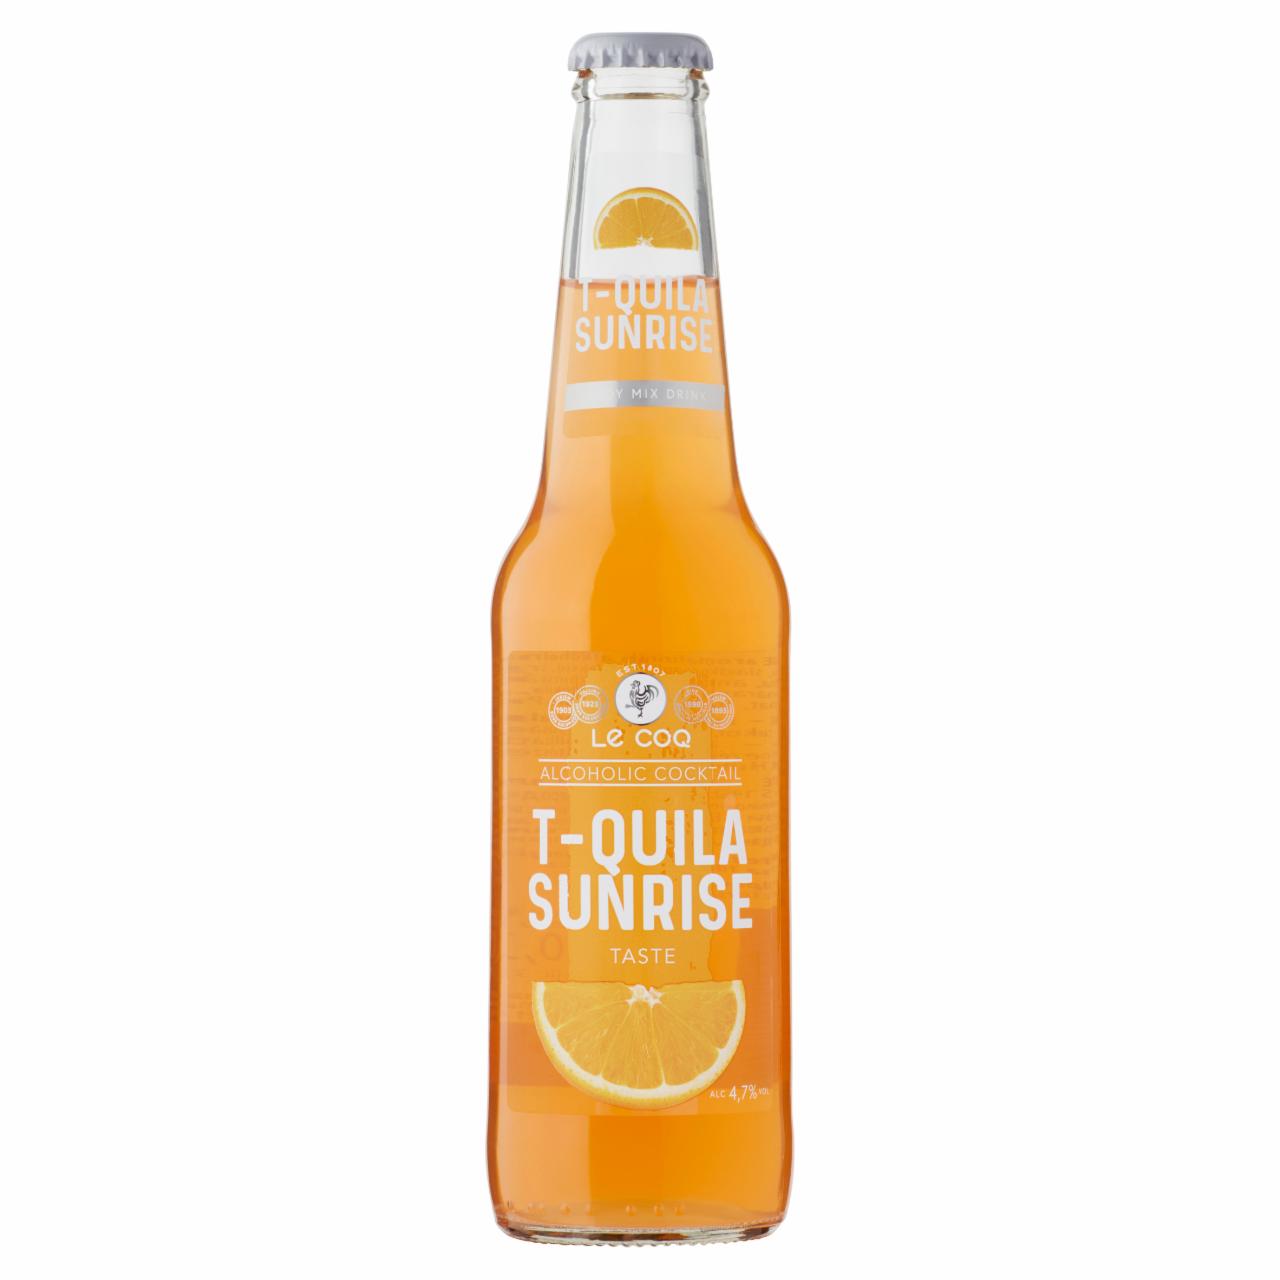 Képek - Le Coq T-Quila Sunrise ízesített alkoholtartalmú ital 4,7% 0,33 l